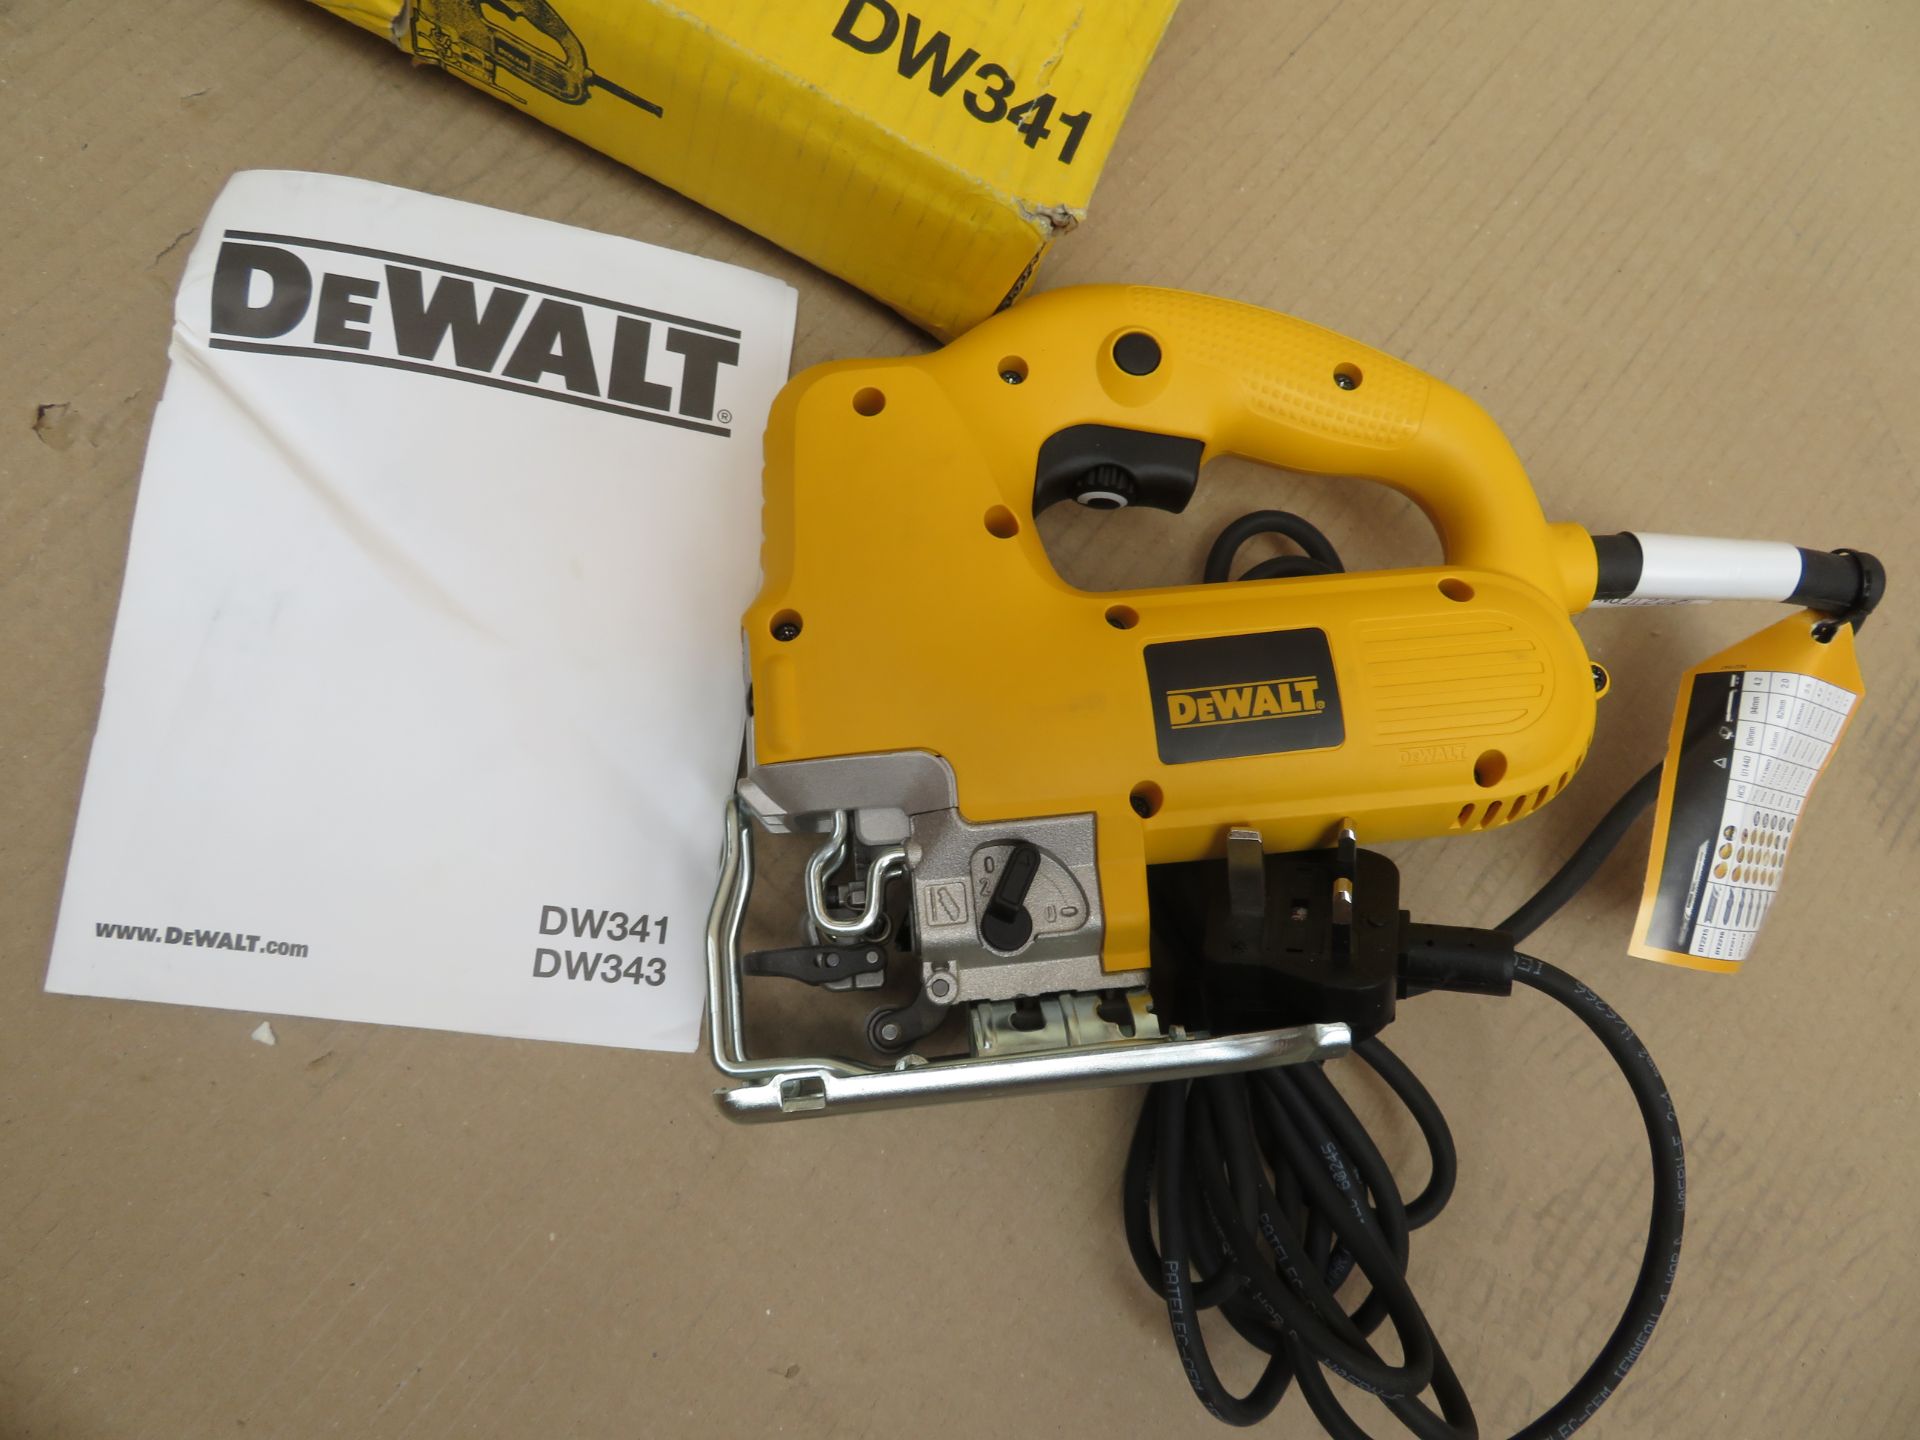 (A21) Dewalt Dw341-Gb 550W Jigsaw 230V- New Condition, Slightly Tatty Box. - Image 4 of 4